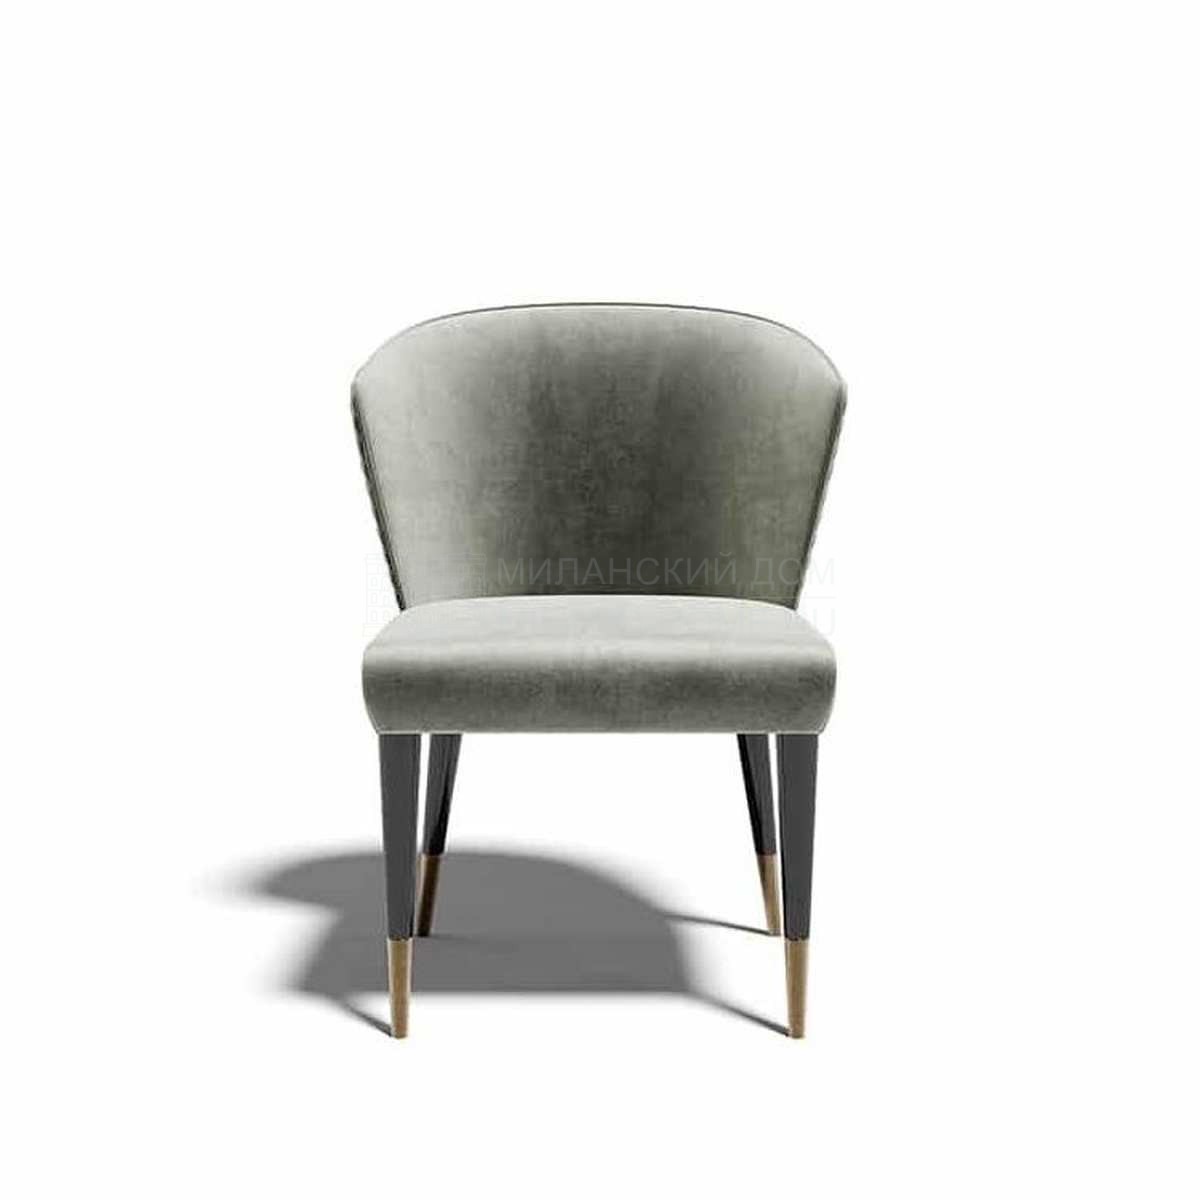 Стул Ninfea chair из Италии фабрики CAPITAL Collection